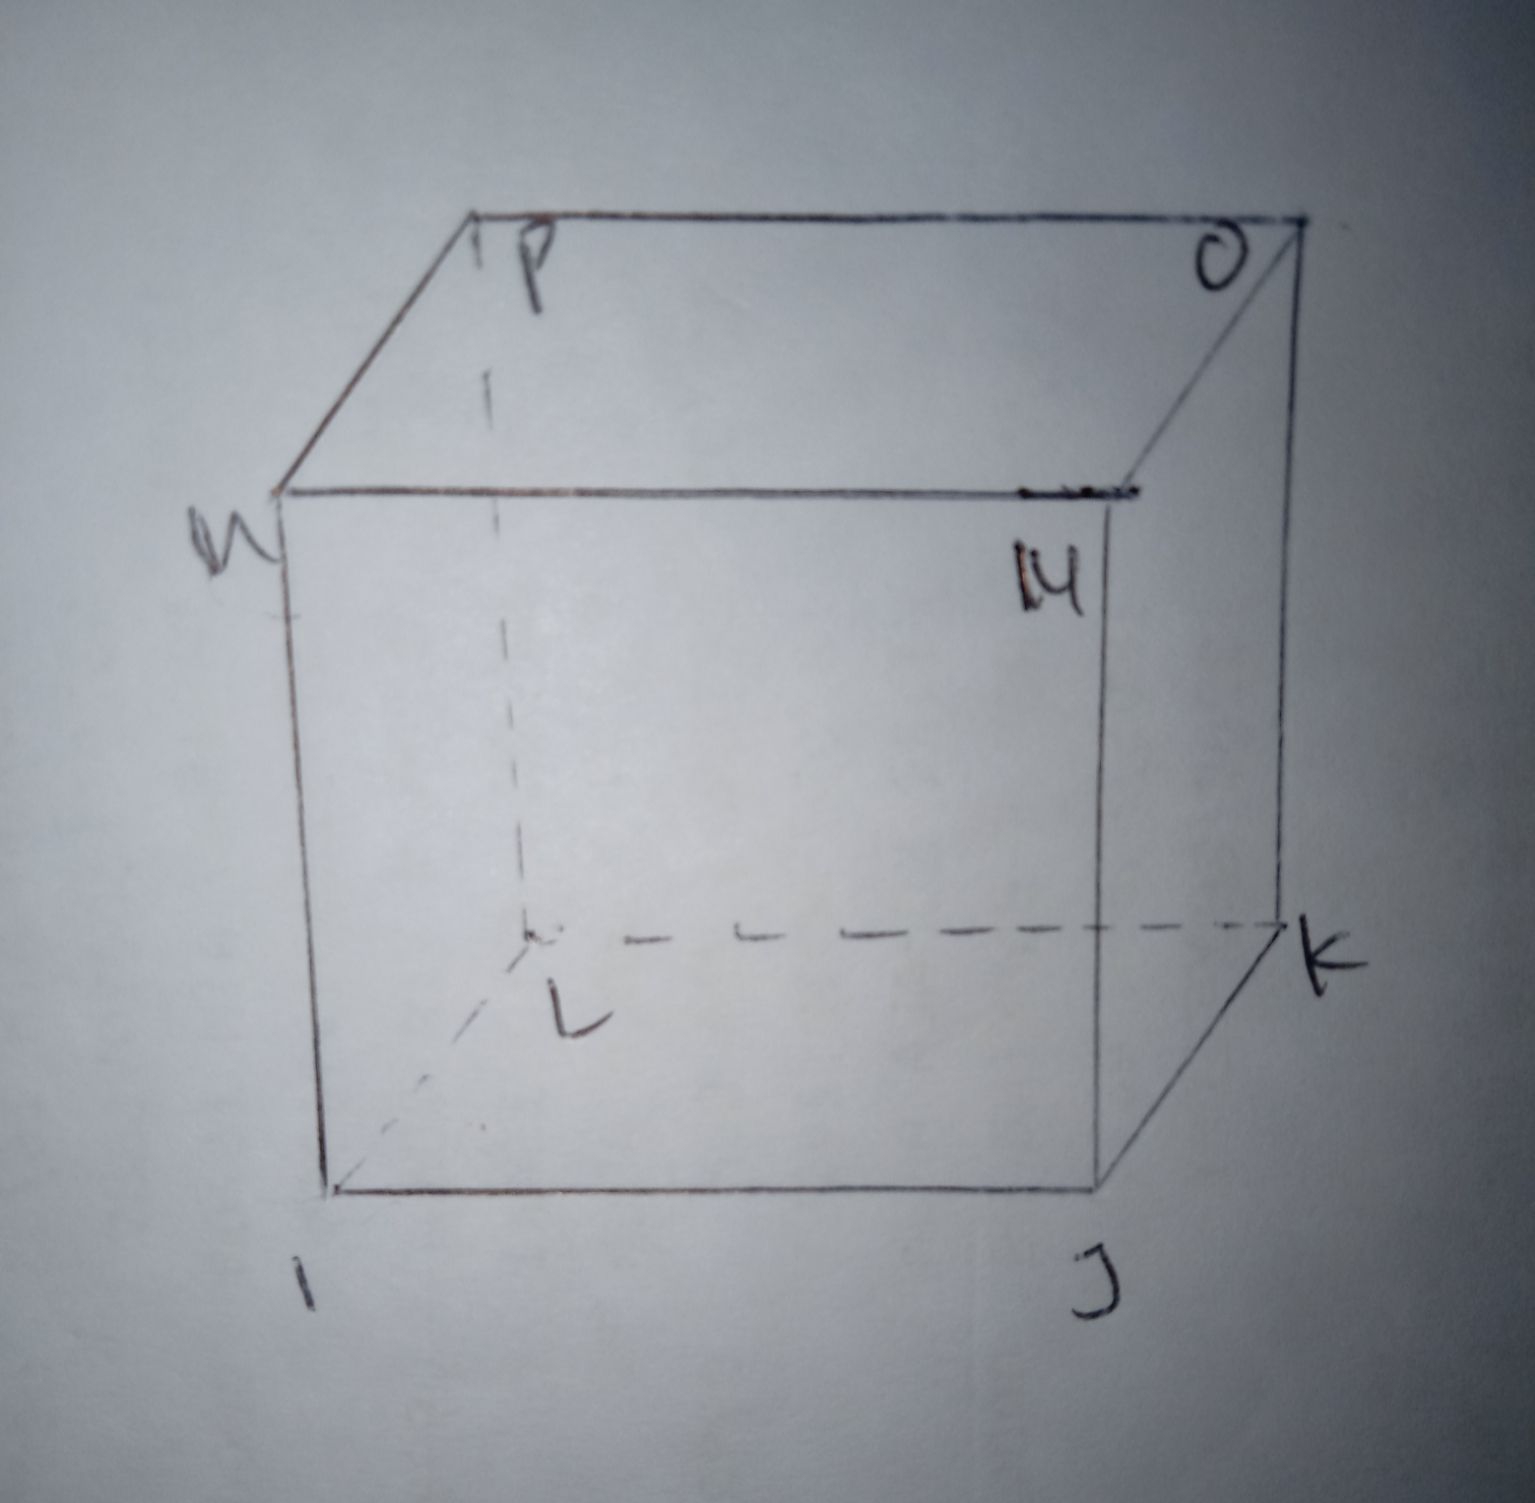 Dalam gambar kubus IJKL MNOP, terdapat 4 rusuk horizontal yang berhadapan. Berikut jawaban tematik kelas 6 SD/MI Tema 4